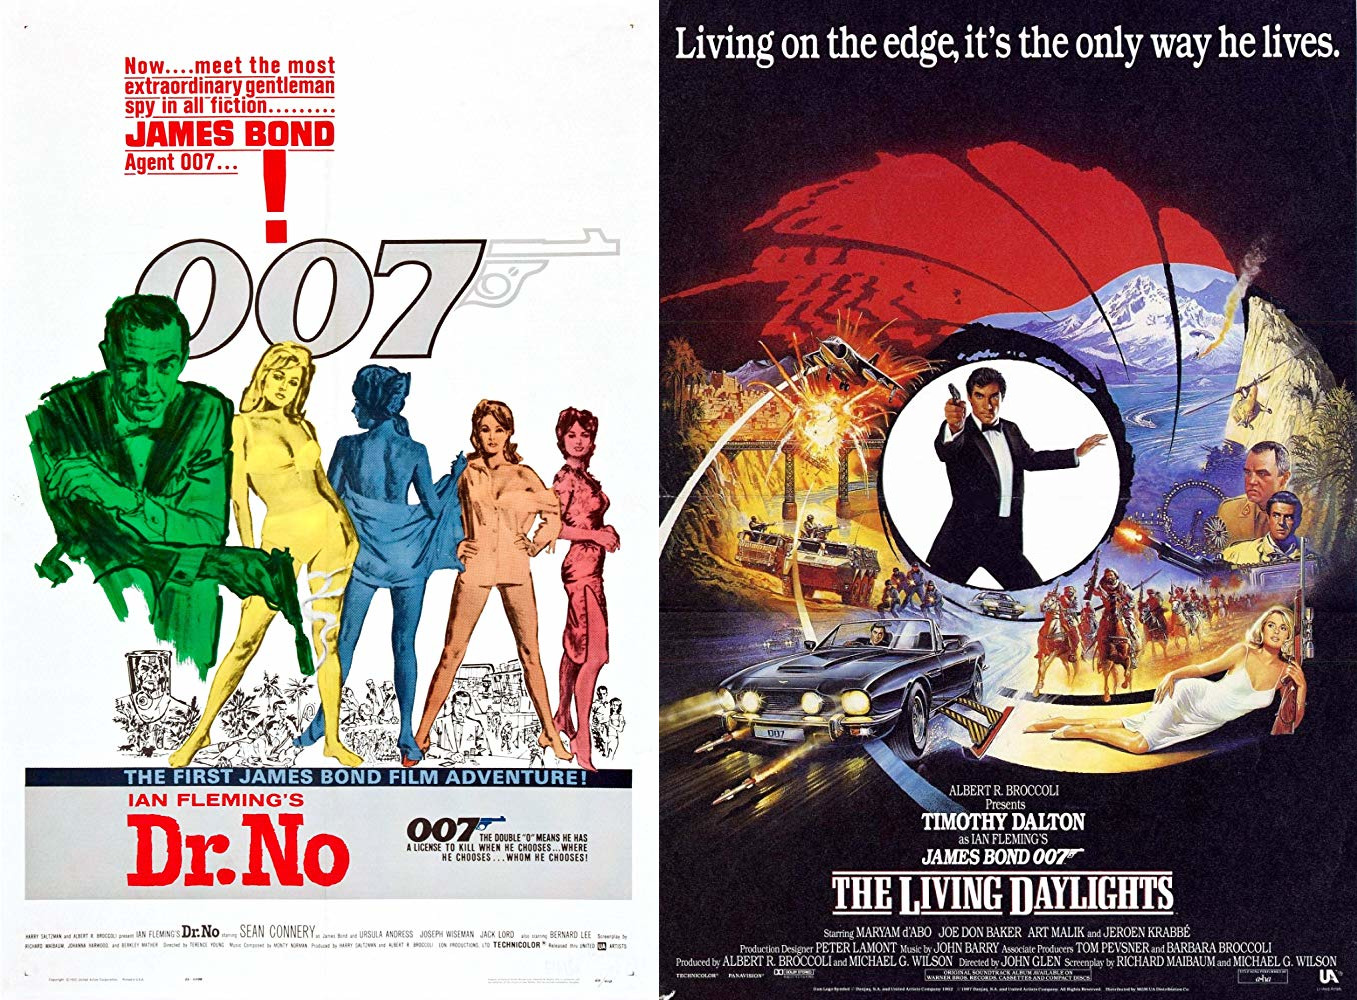 DR. NO  007 Meets DR. NO 